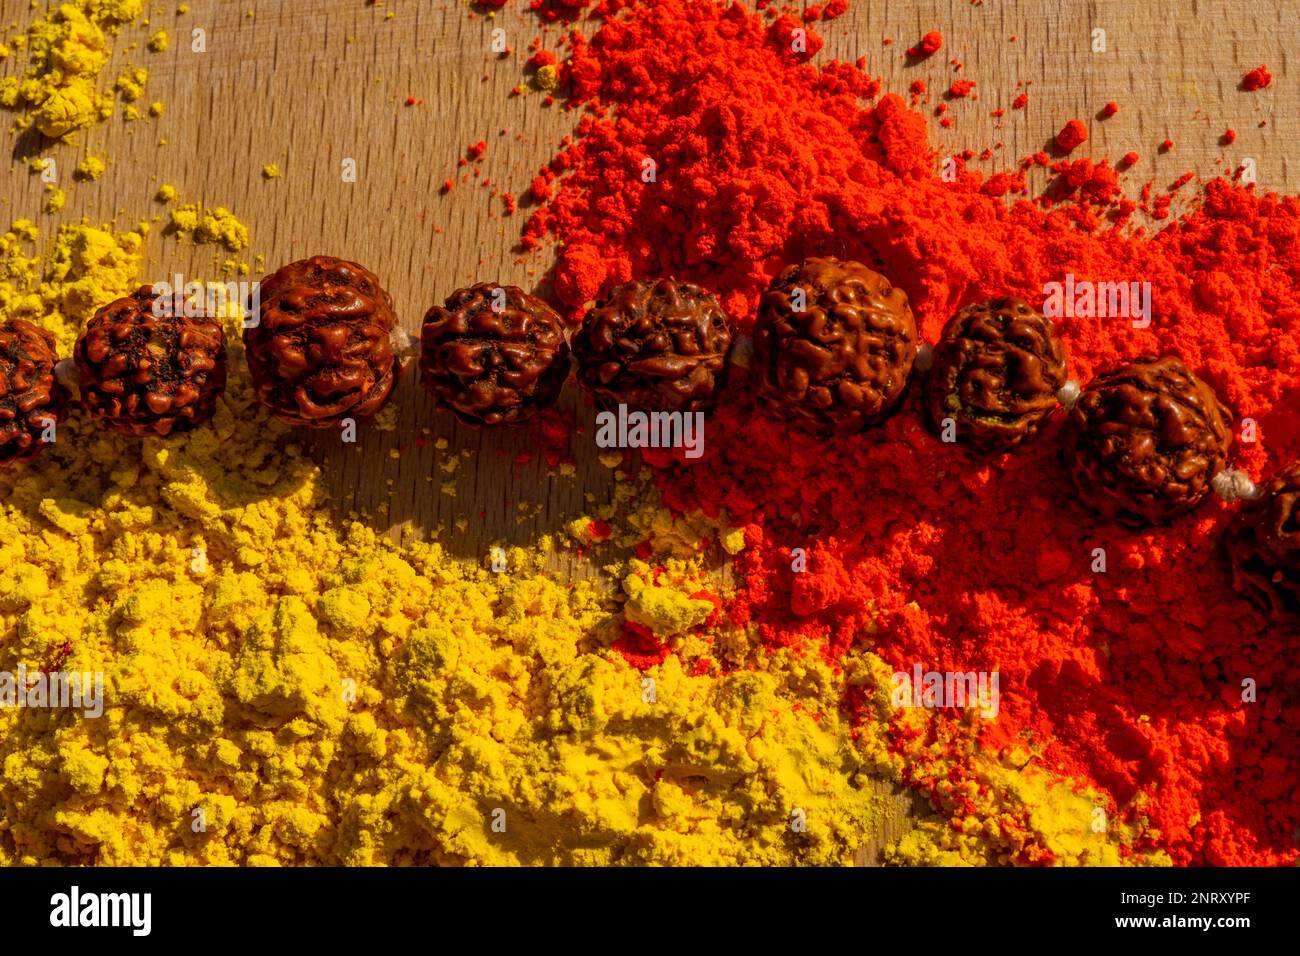 Farbenfrohes traditionelles holi-Pulver auf dem Tisch mit hölzernen Gebeten, indischen Perlen. Frohes holi. Konzept Indisches Farbfestival namens Holi. Organisches Gulal d Stockfoto